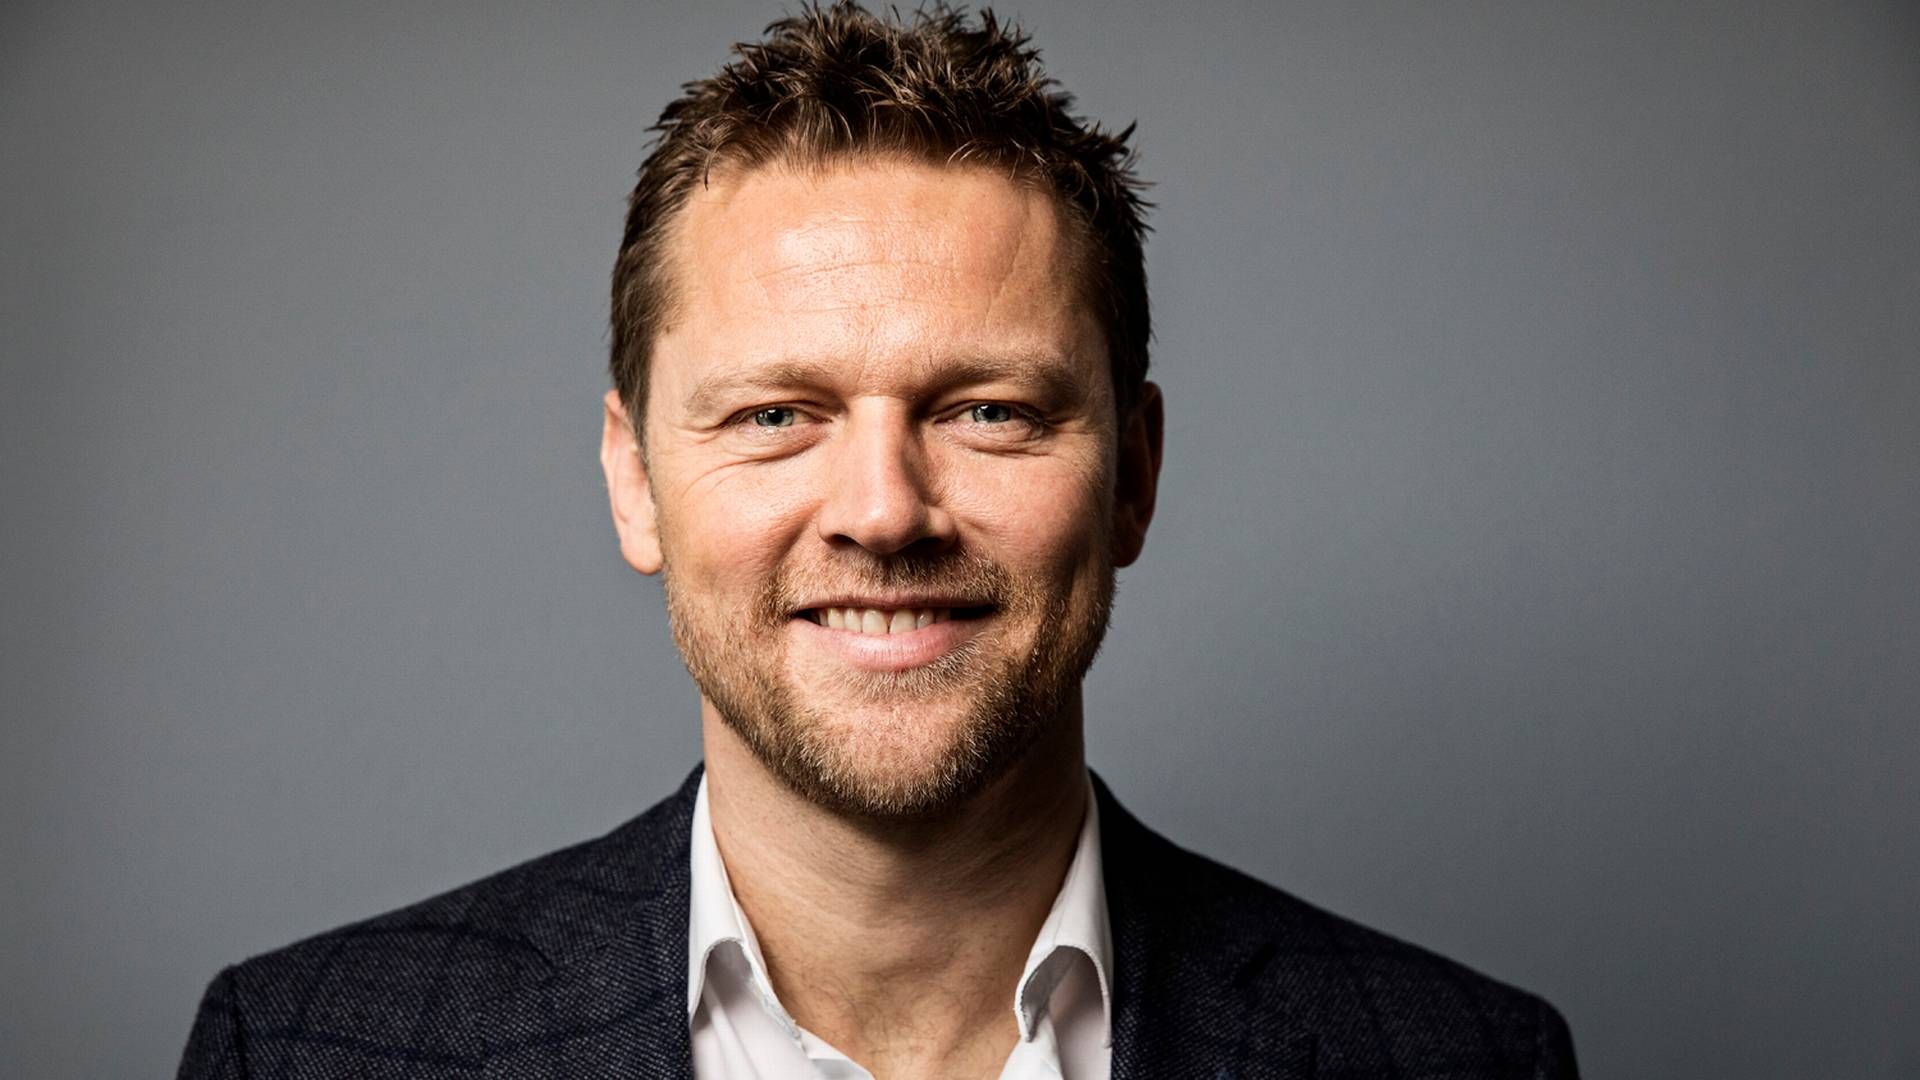 Dan Højgaard, chef for kapitalfonden Industri Udvikling, har købt endnu en virksomhed. | Foto: Niels Hougaard/JP